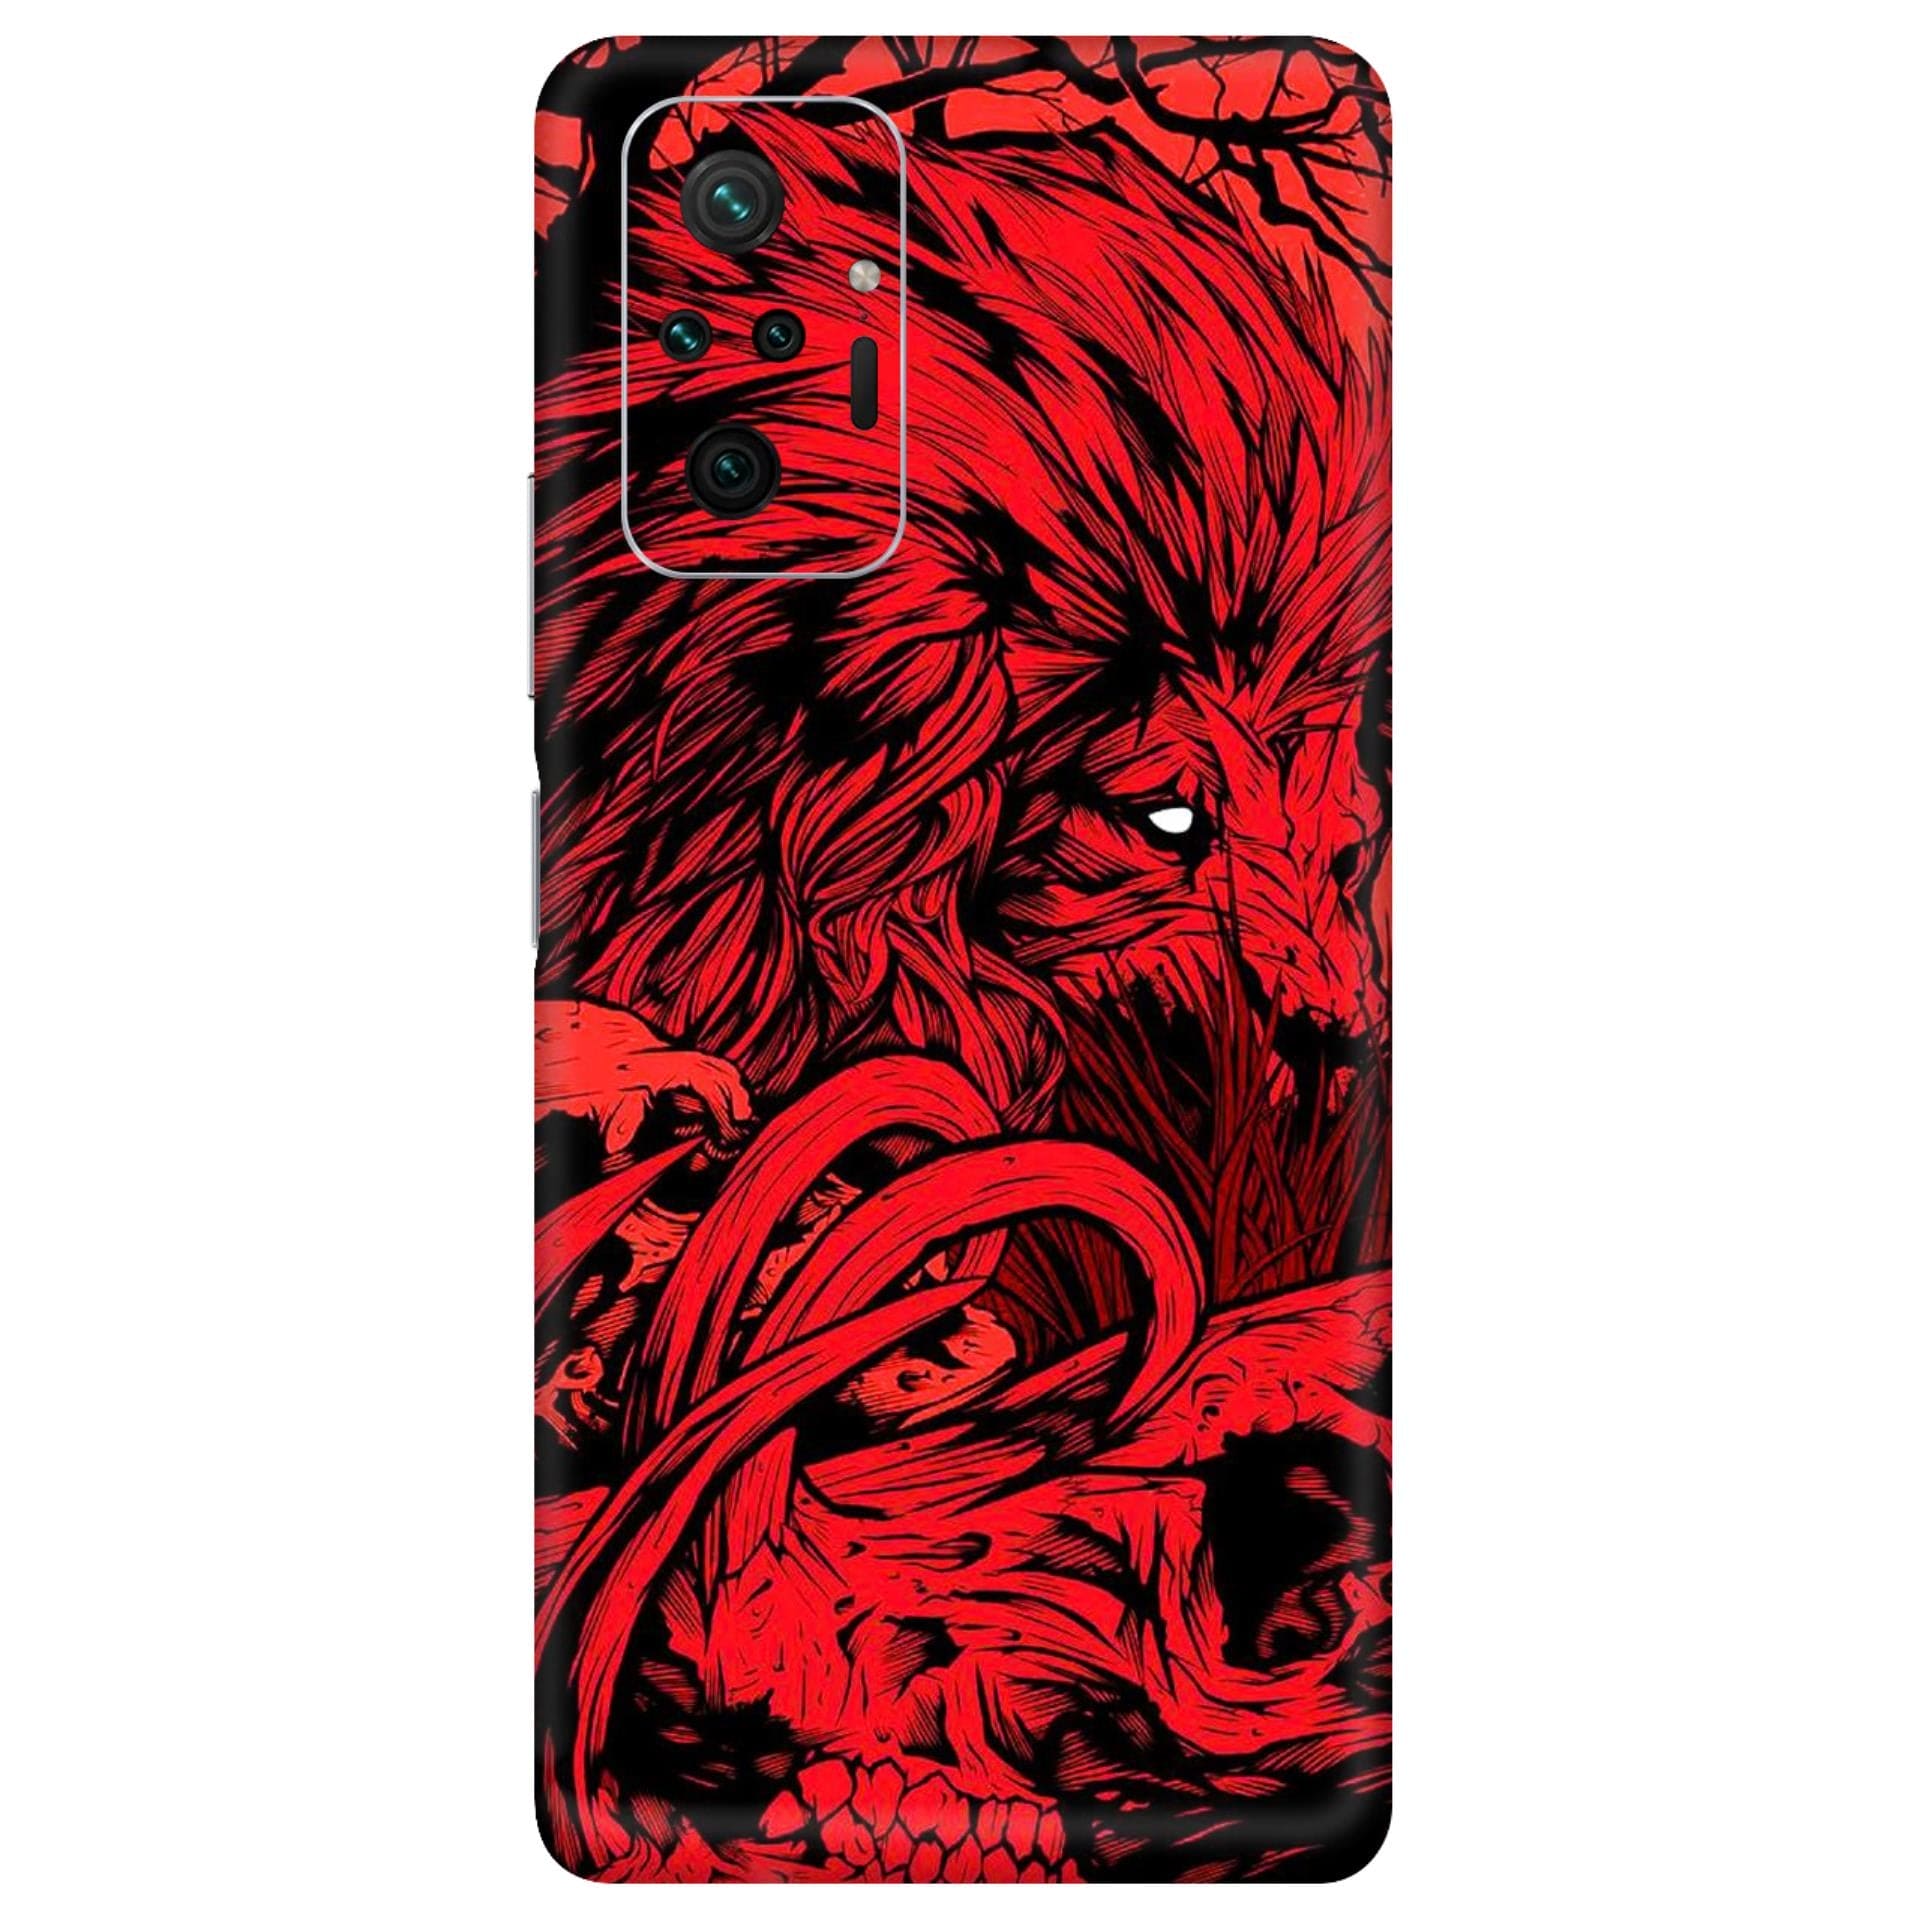 Redmi Note 10 Pro Fiery Lion skins